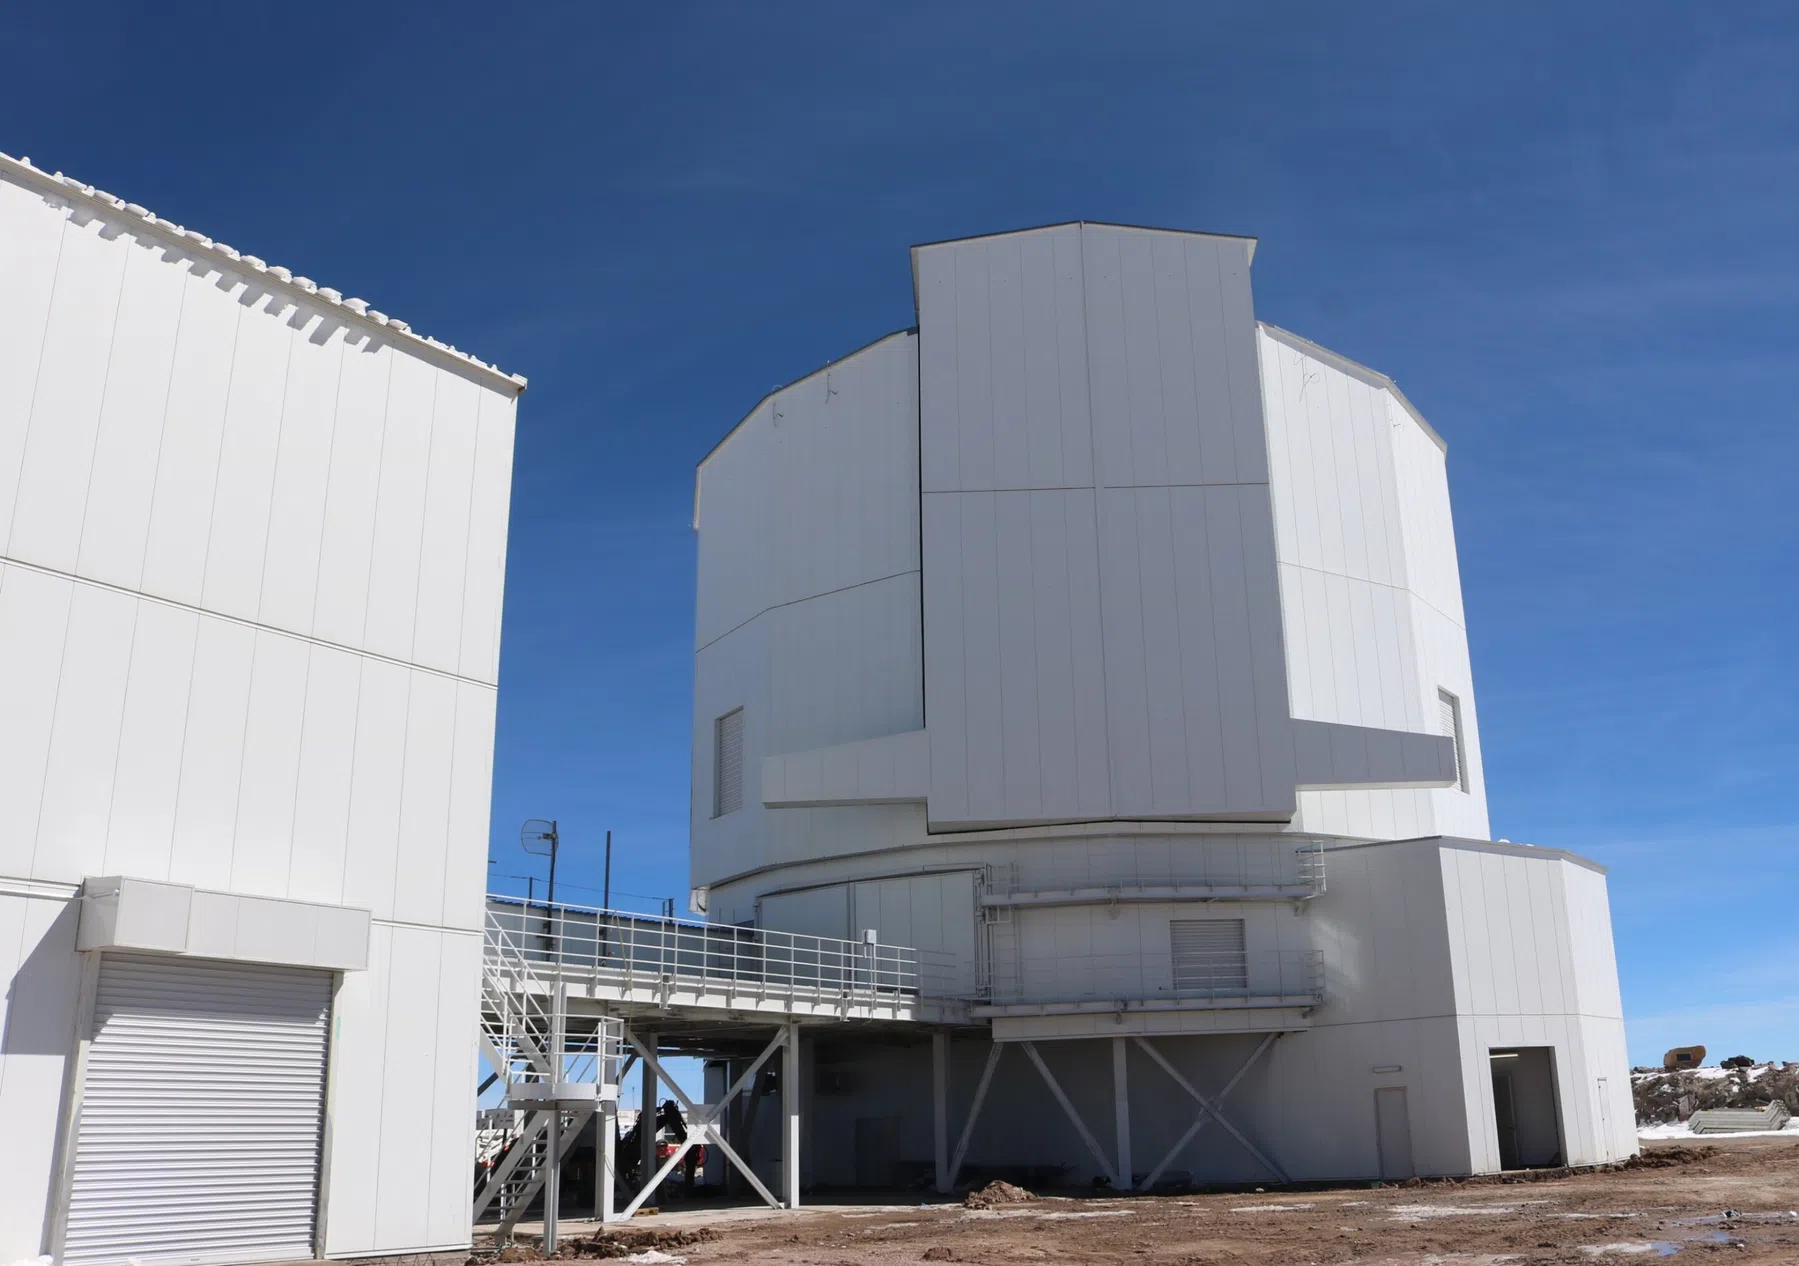 Hoogste observatorium op aarde in gebruik genomen – waar dient het voor?